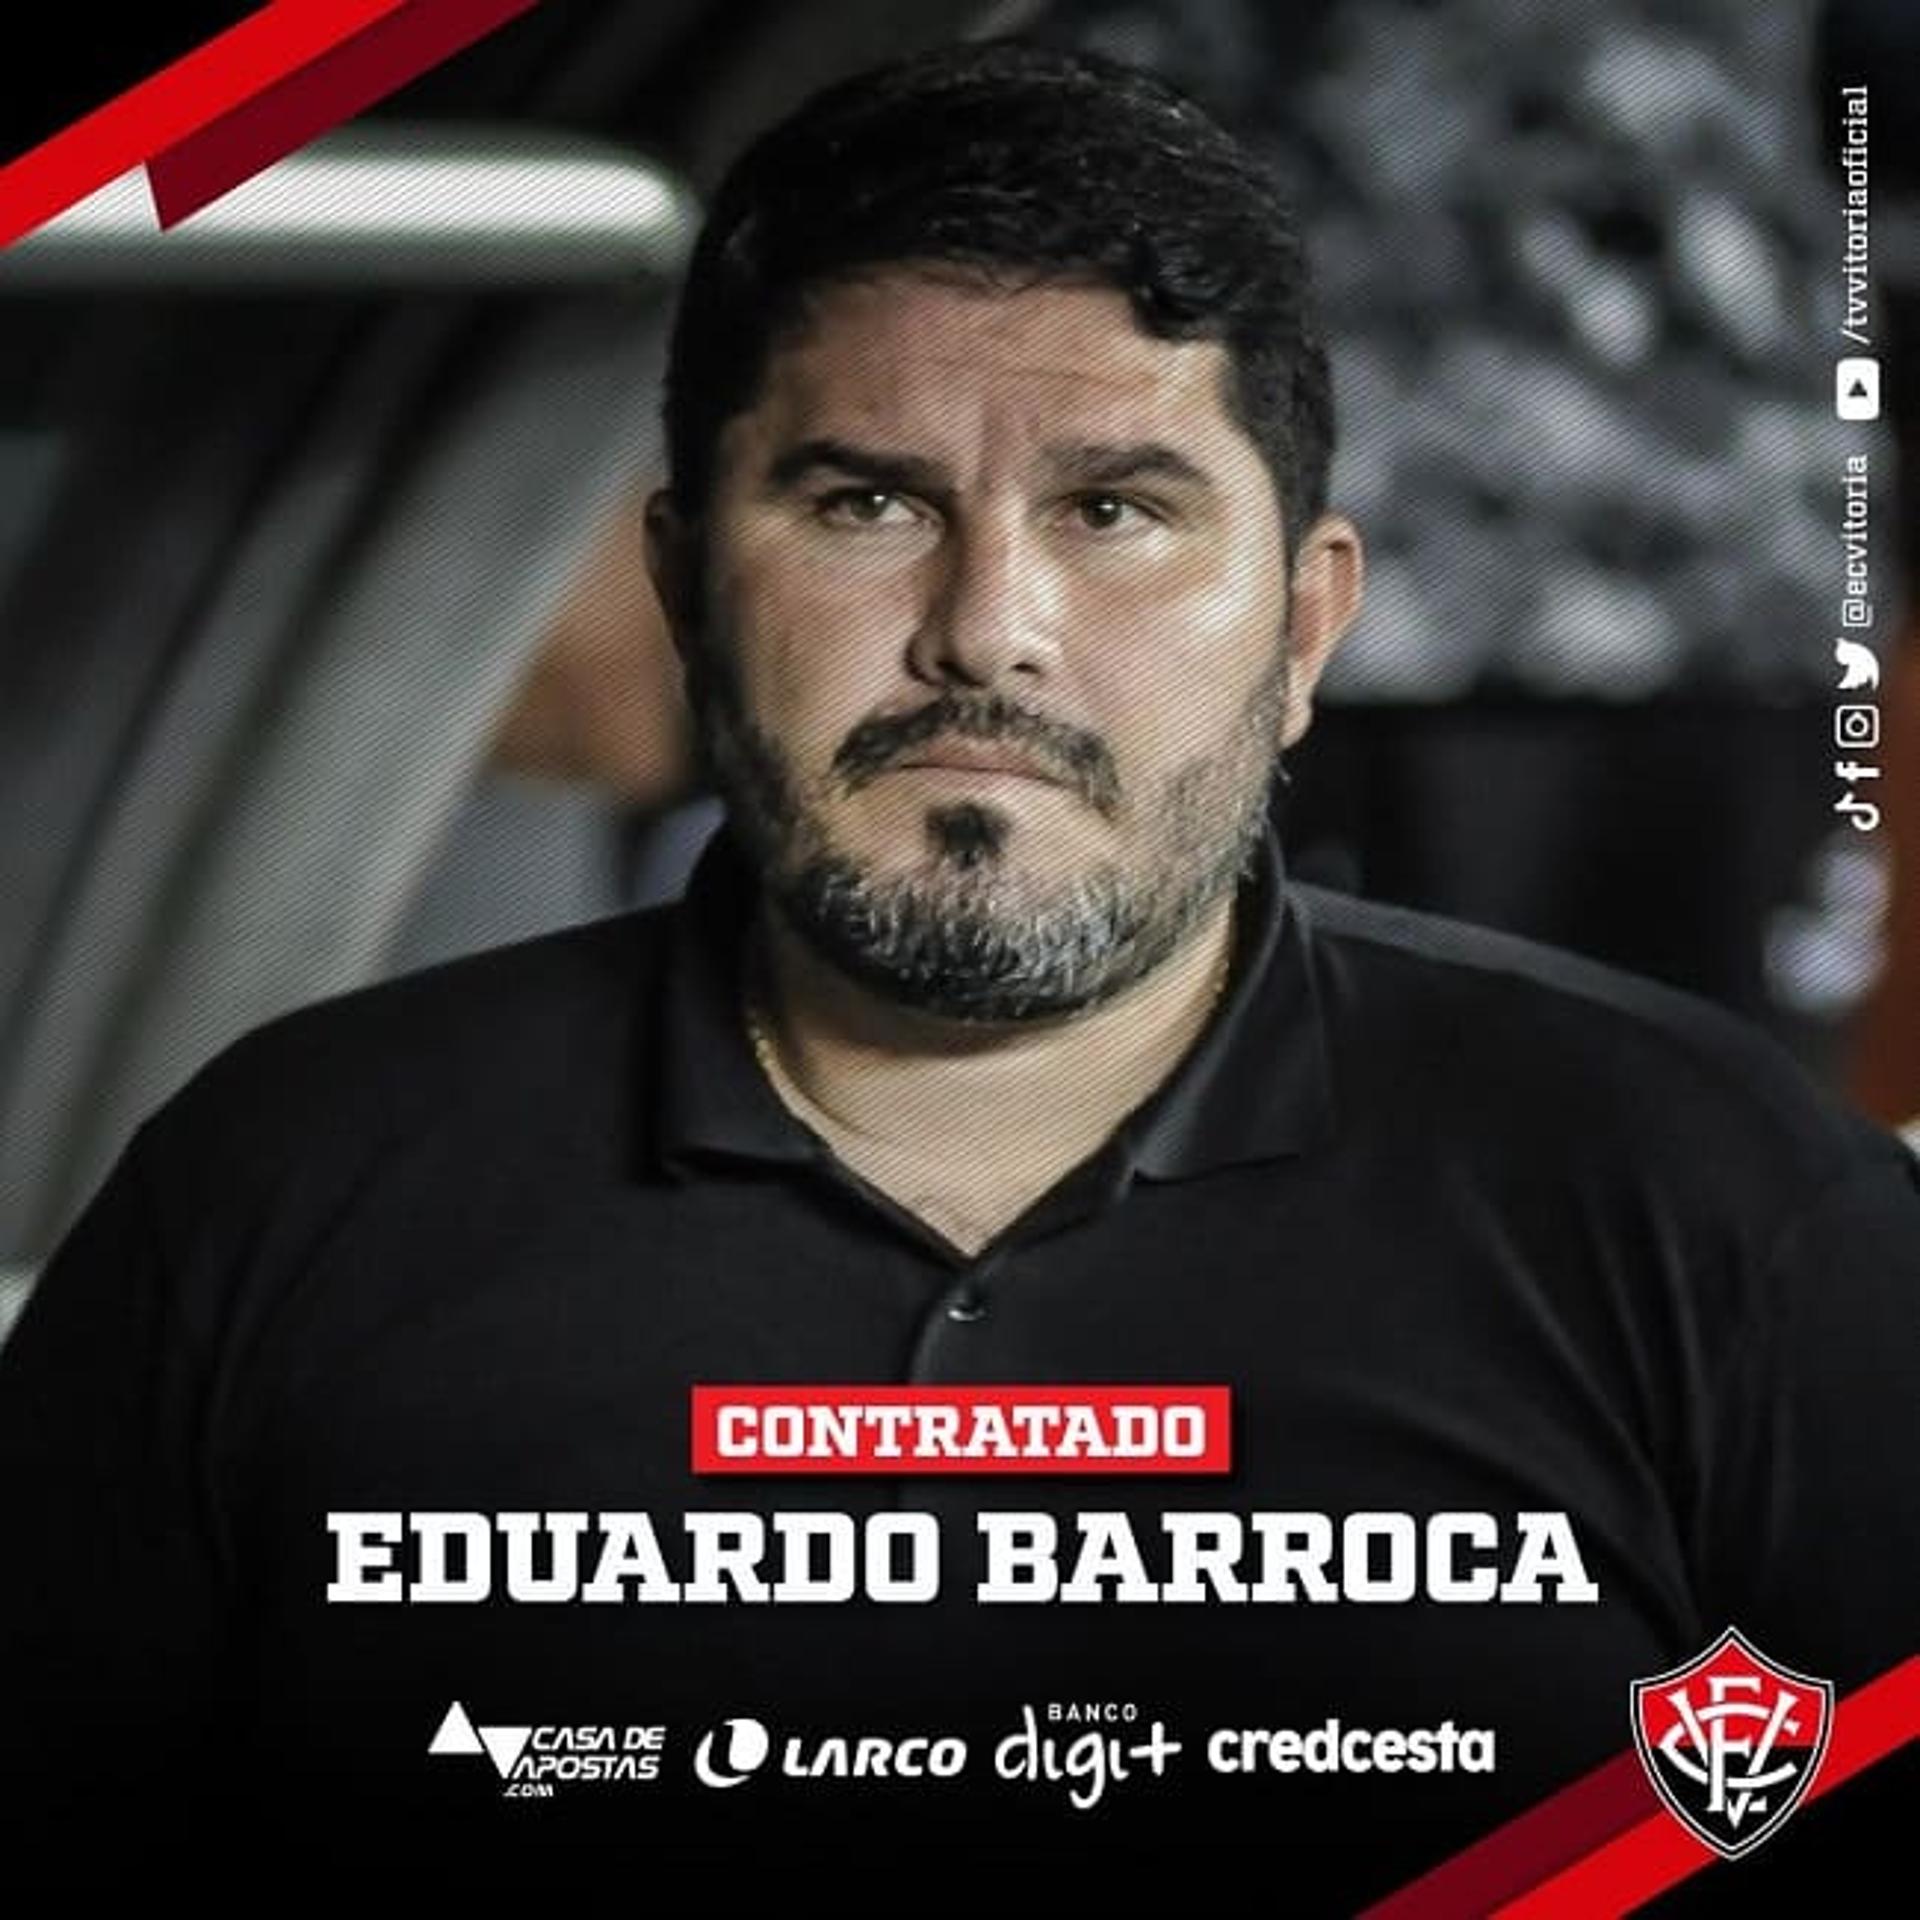 Eduardo Barroca anunciado pelo Vitória